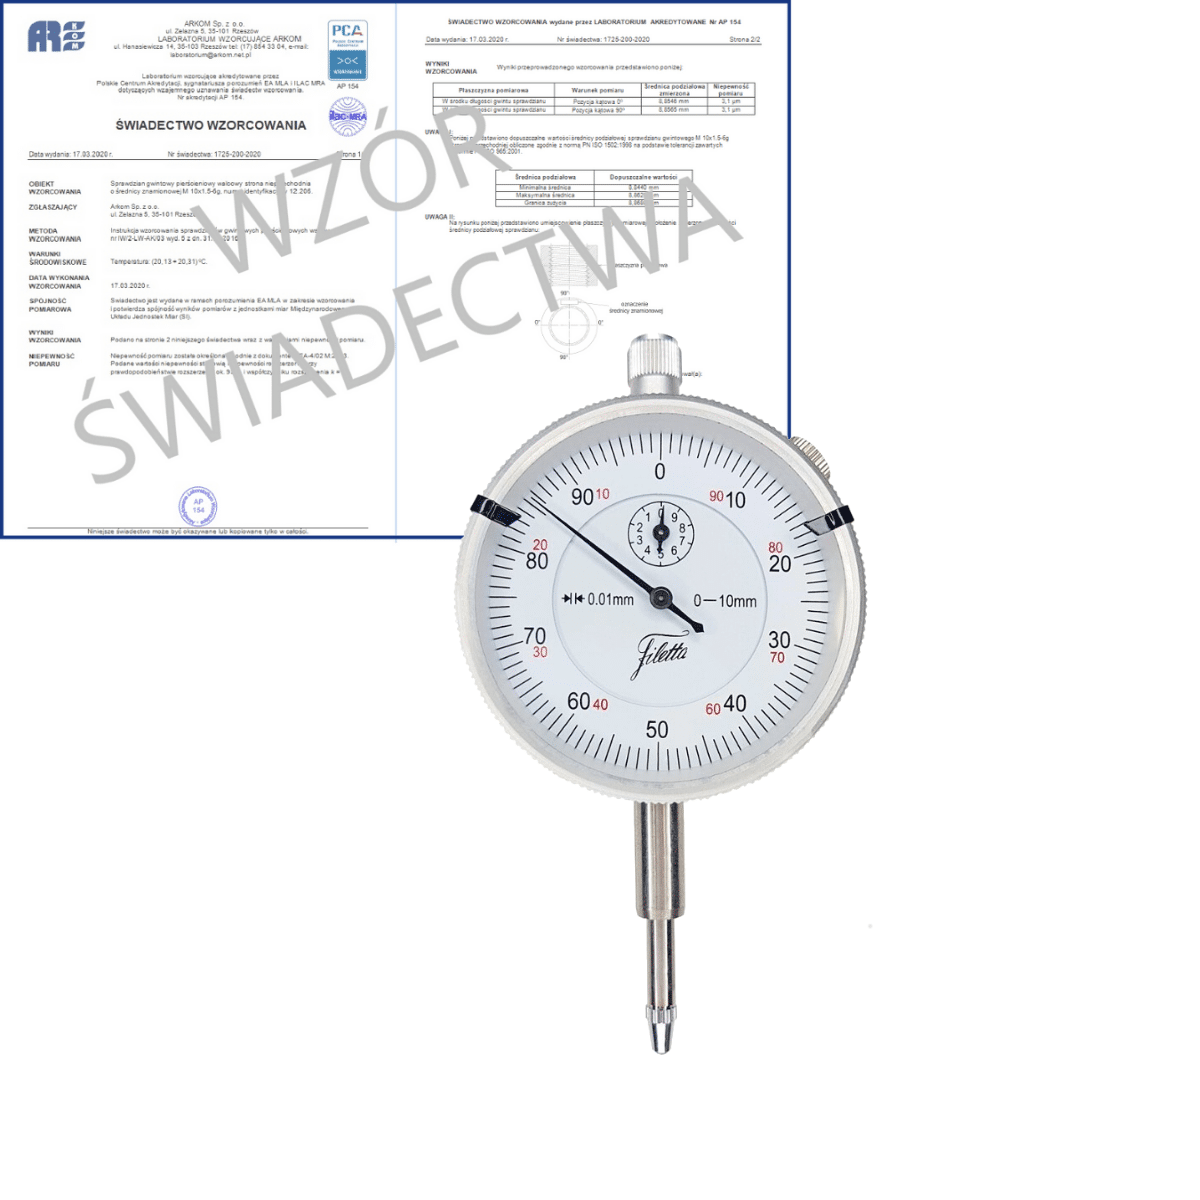 SCHUT czujnik zegarowy wstrząsoodporny 0-10/0.01 mm + świadectwo wzorcowania PCA  907.933 WZORC